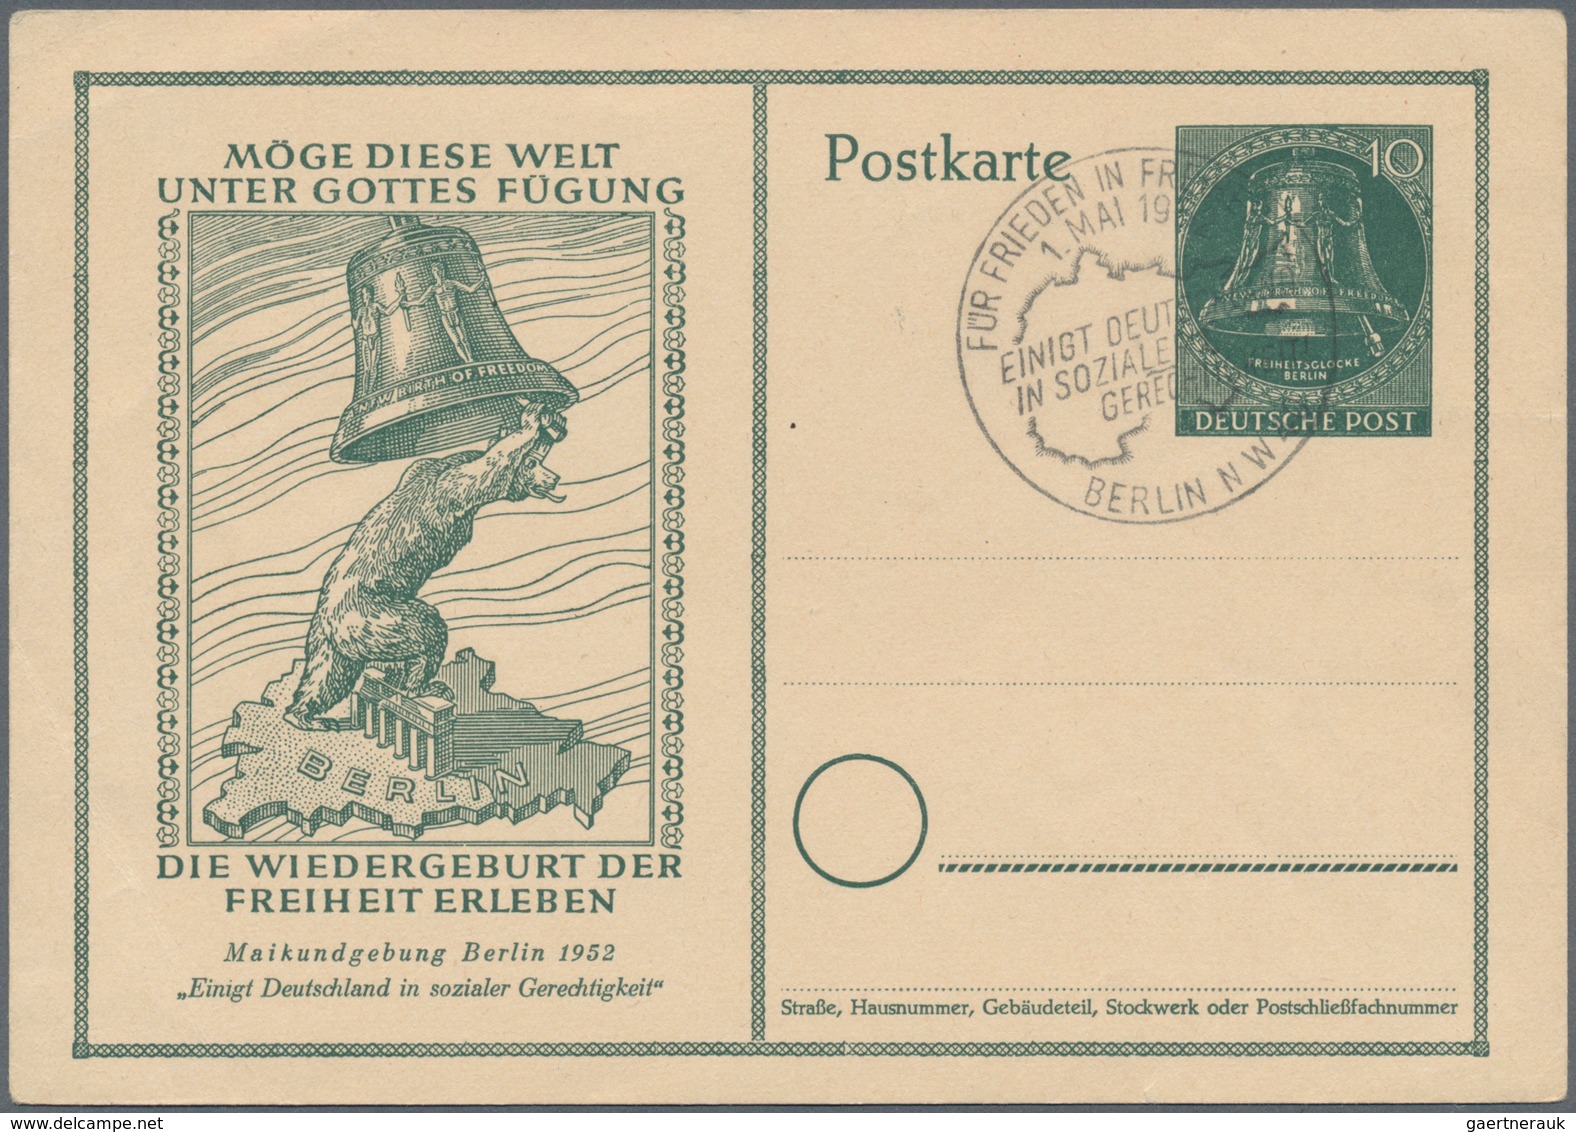 Berlin - Ganzsachen: 1950, zehn verschiedene Sonderpostkarten, alle mit SST (Mi. 670.-)